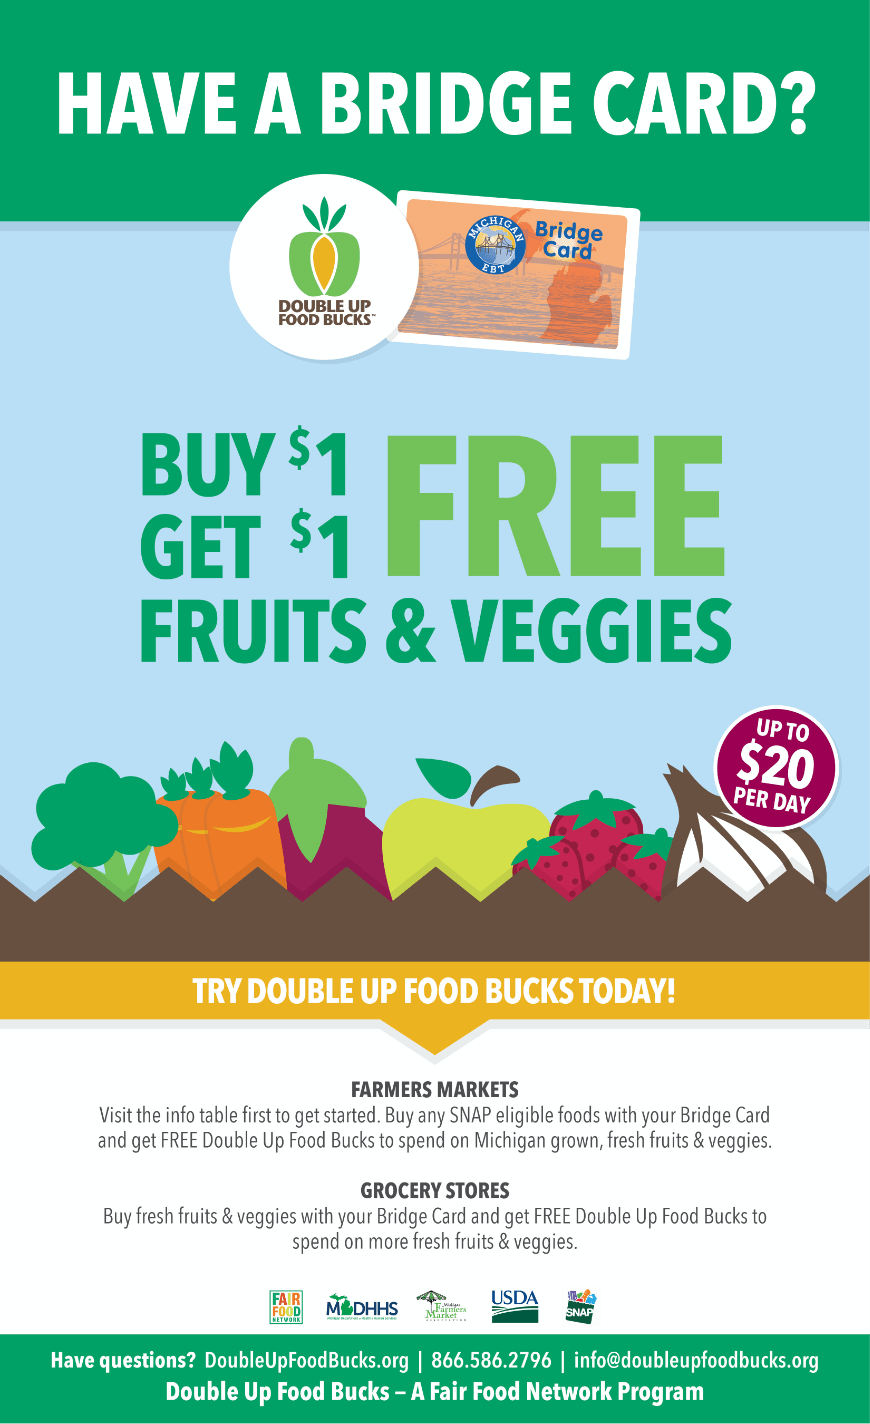 Un cartel que dice Compre $ 1 y obtenga $ 1 gratis de frutas y verduras